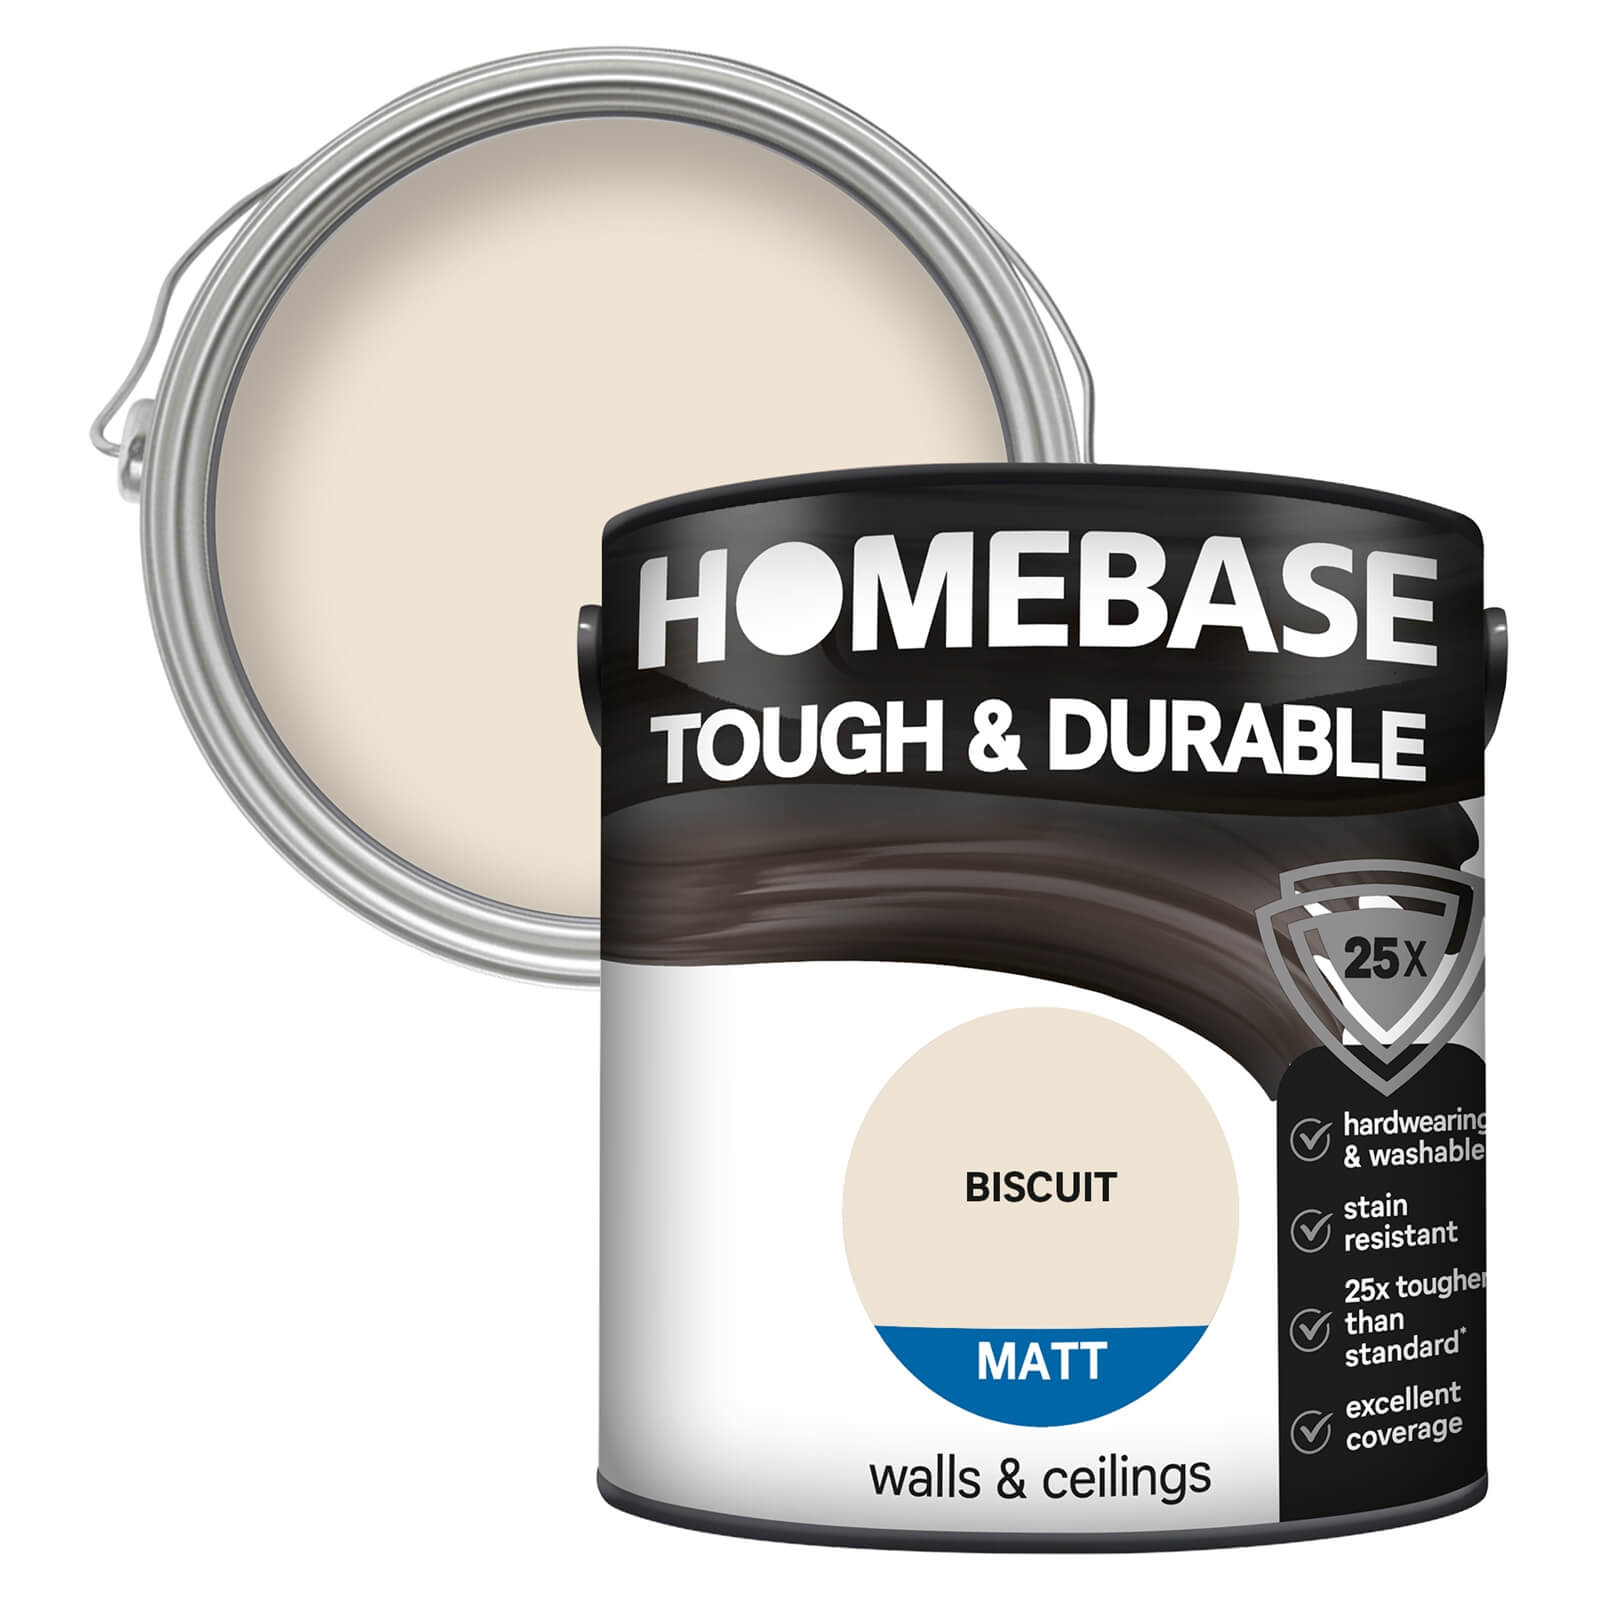 Photo of Homebase Tough & Durable Matt Paint - Biscuit 2.5l